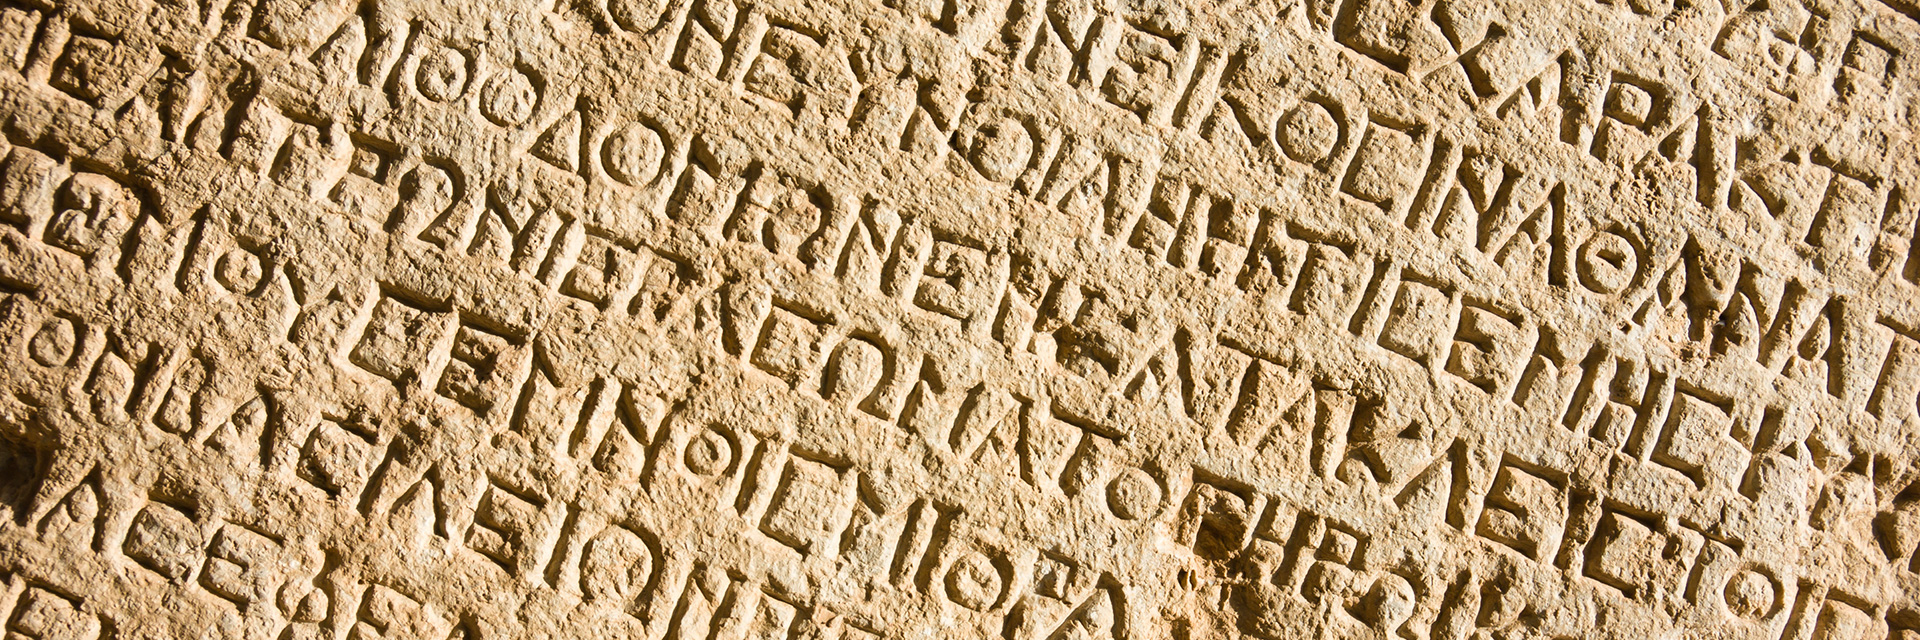 Письмена древней Греции